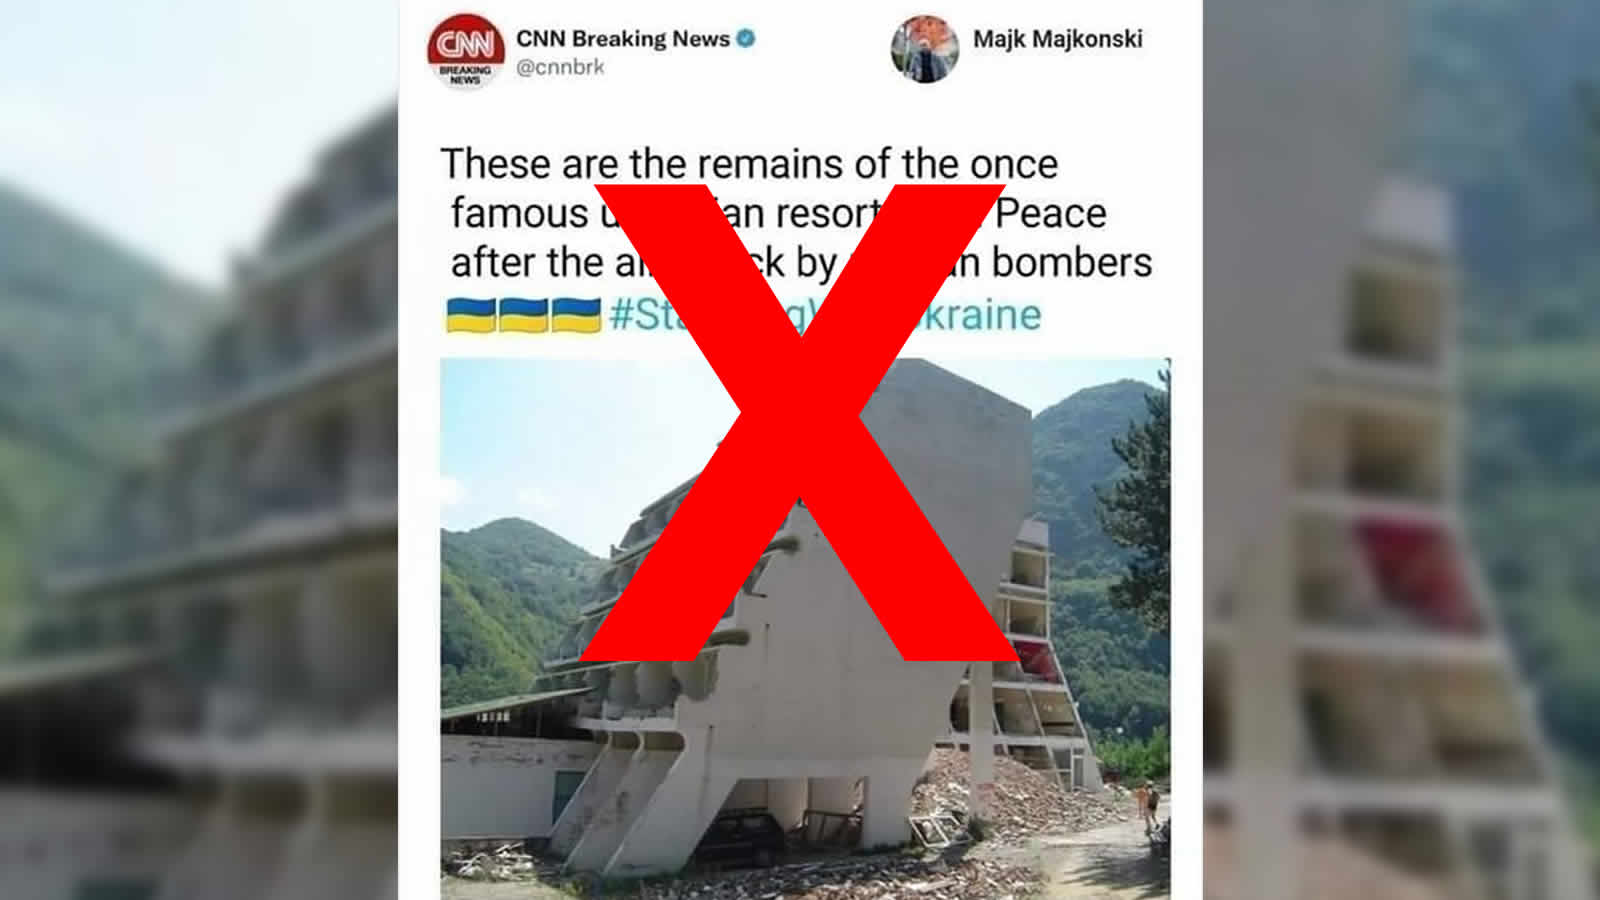 Gefälschter CNN-Tweet mit einem Hotel in Serbien